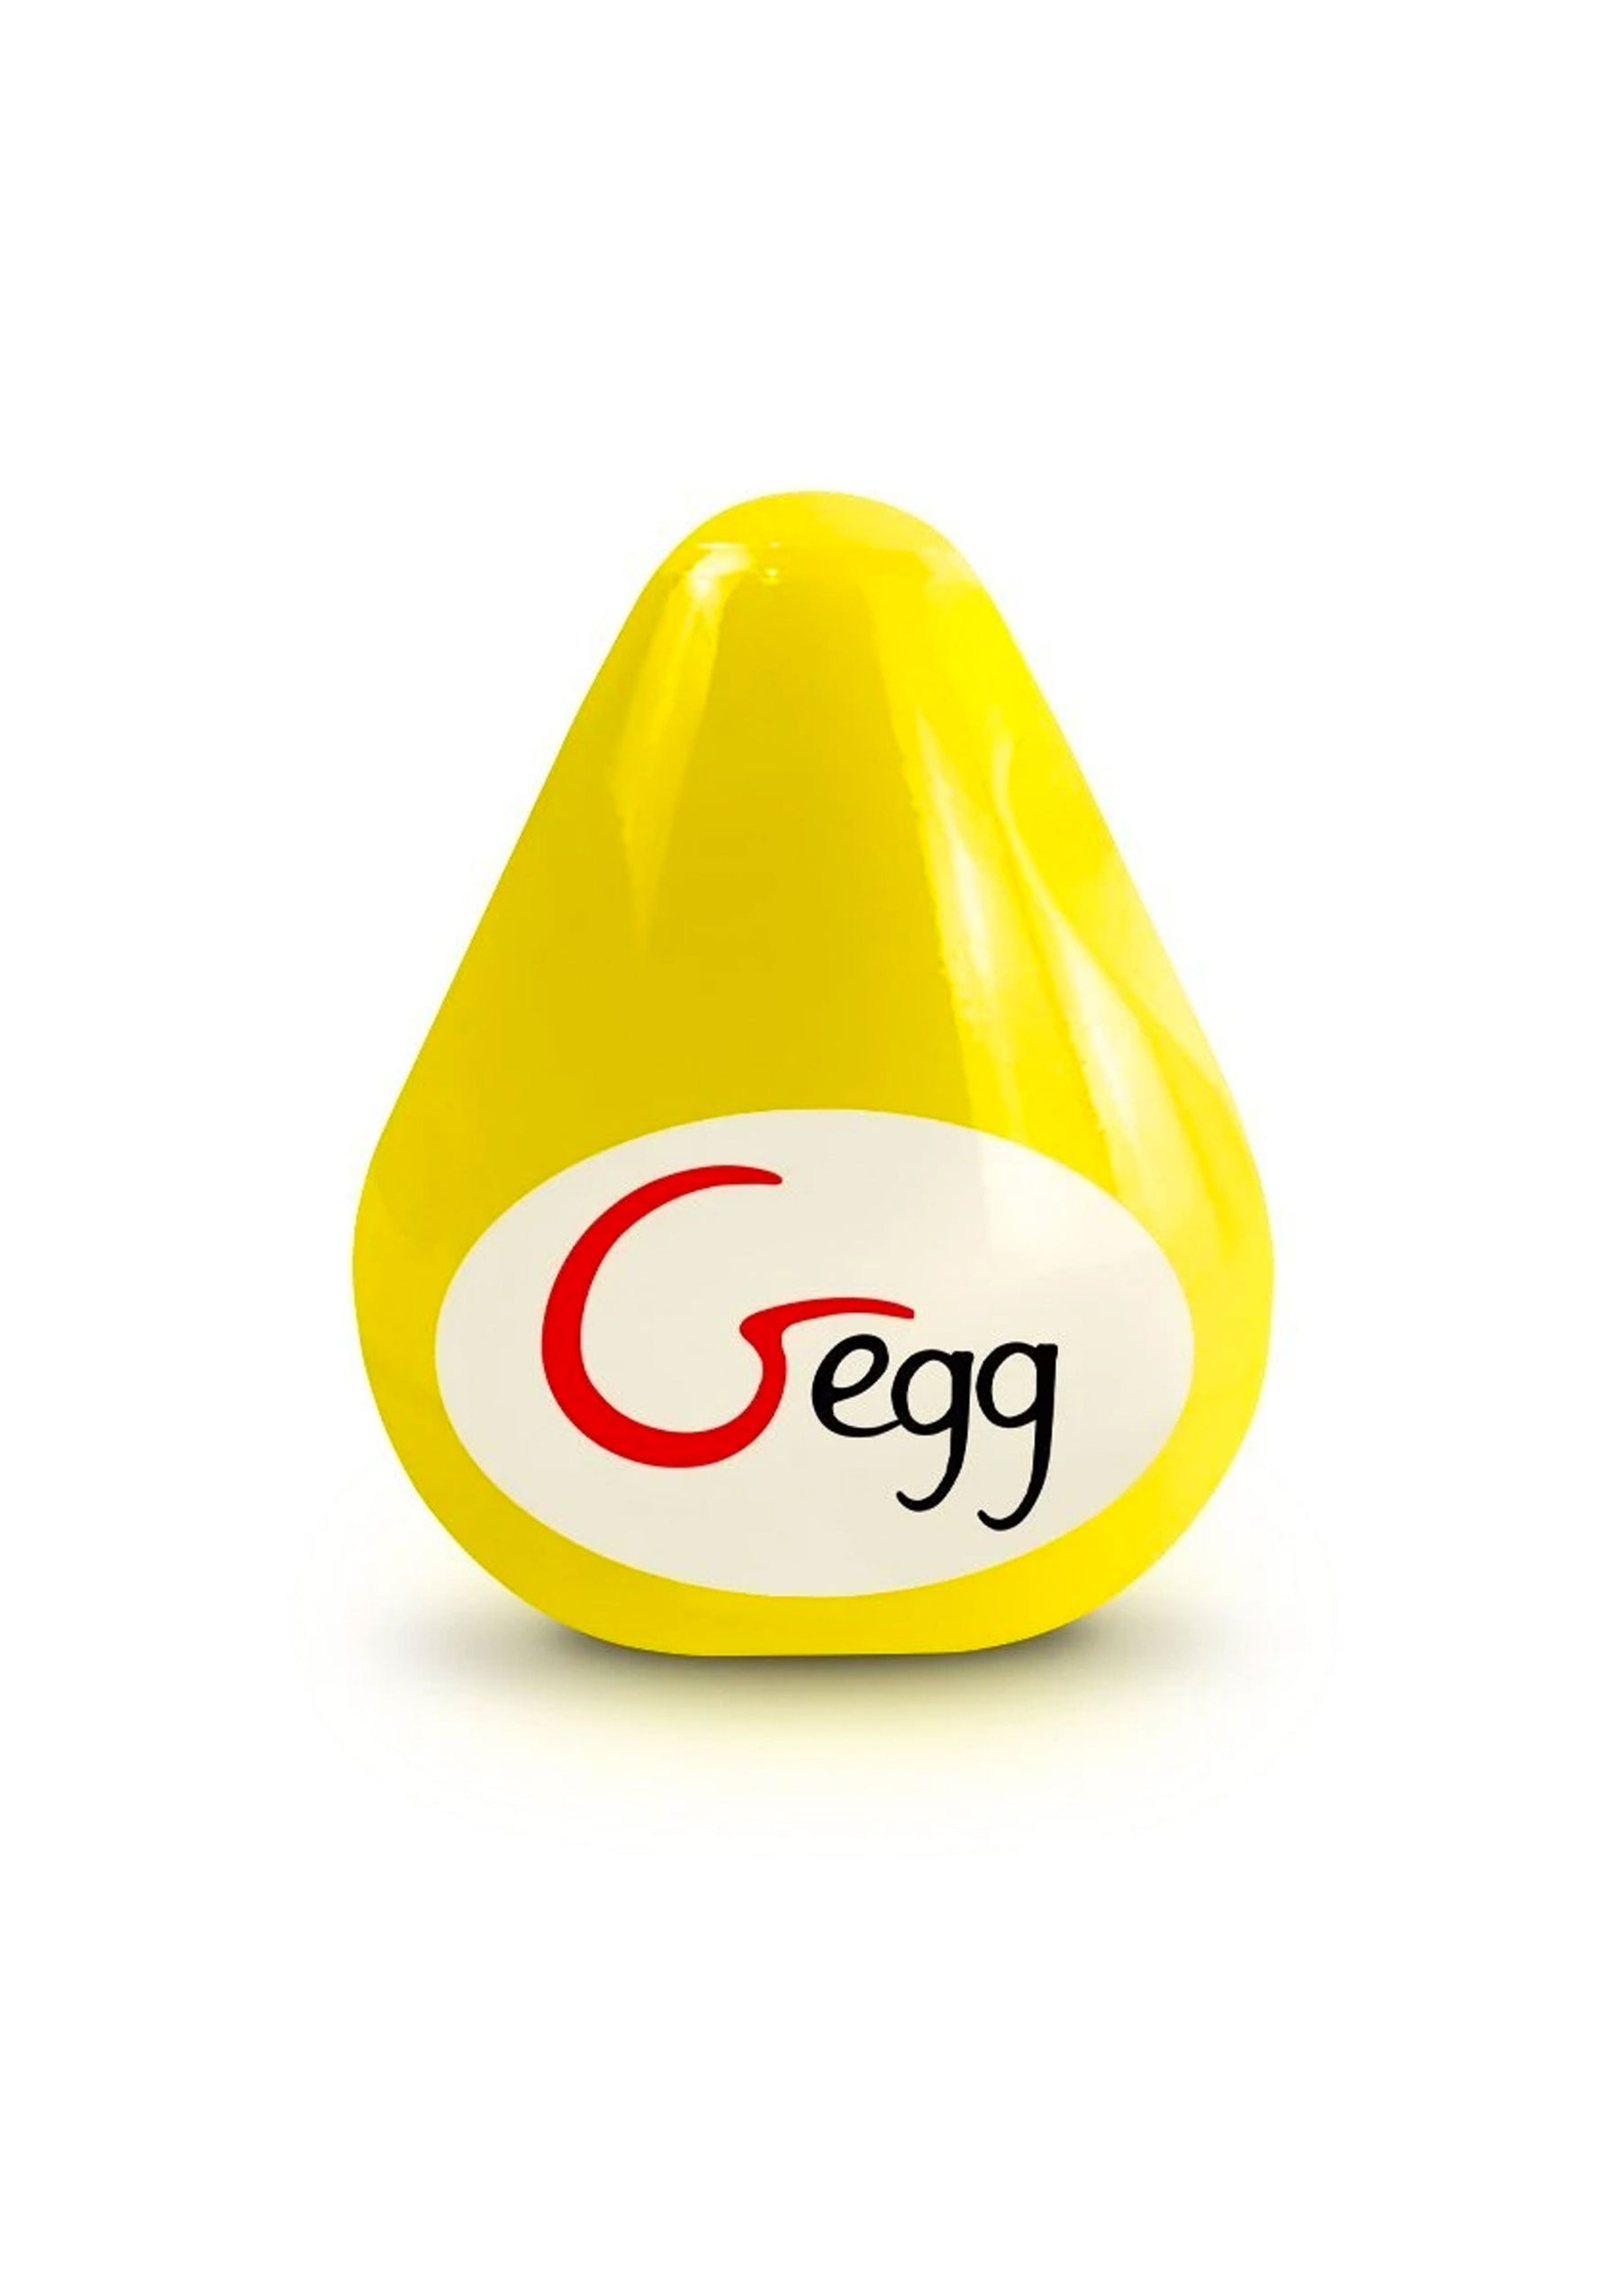 G-Egg Masturbator